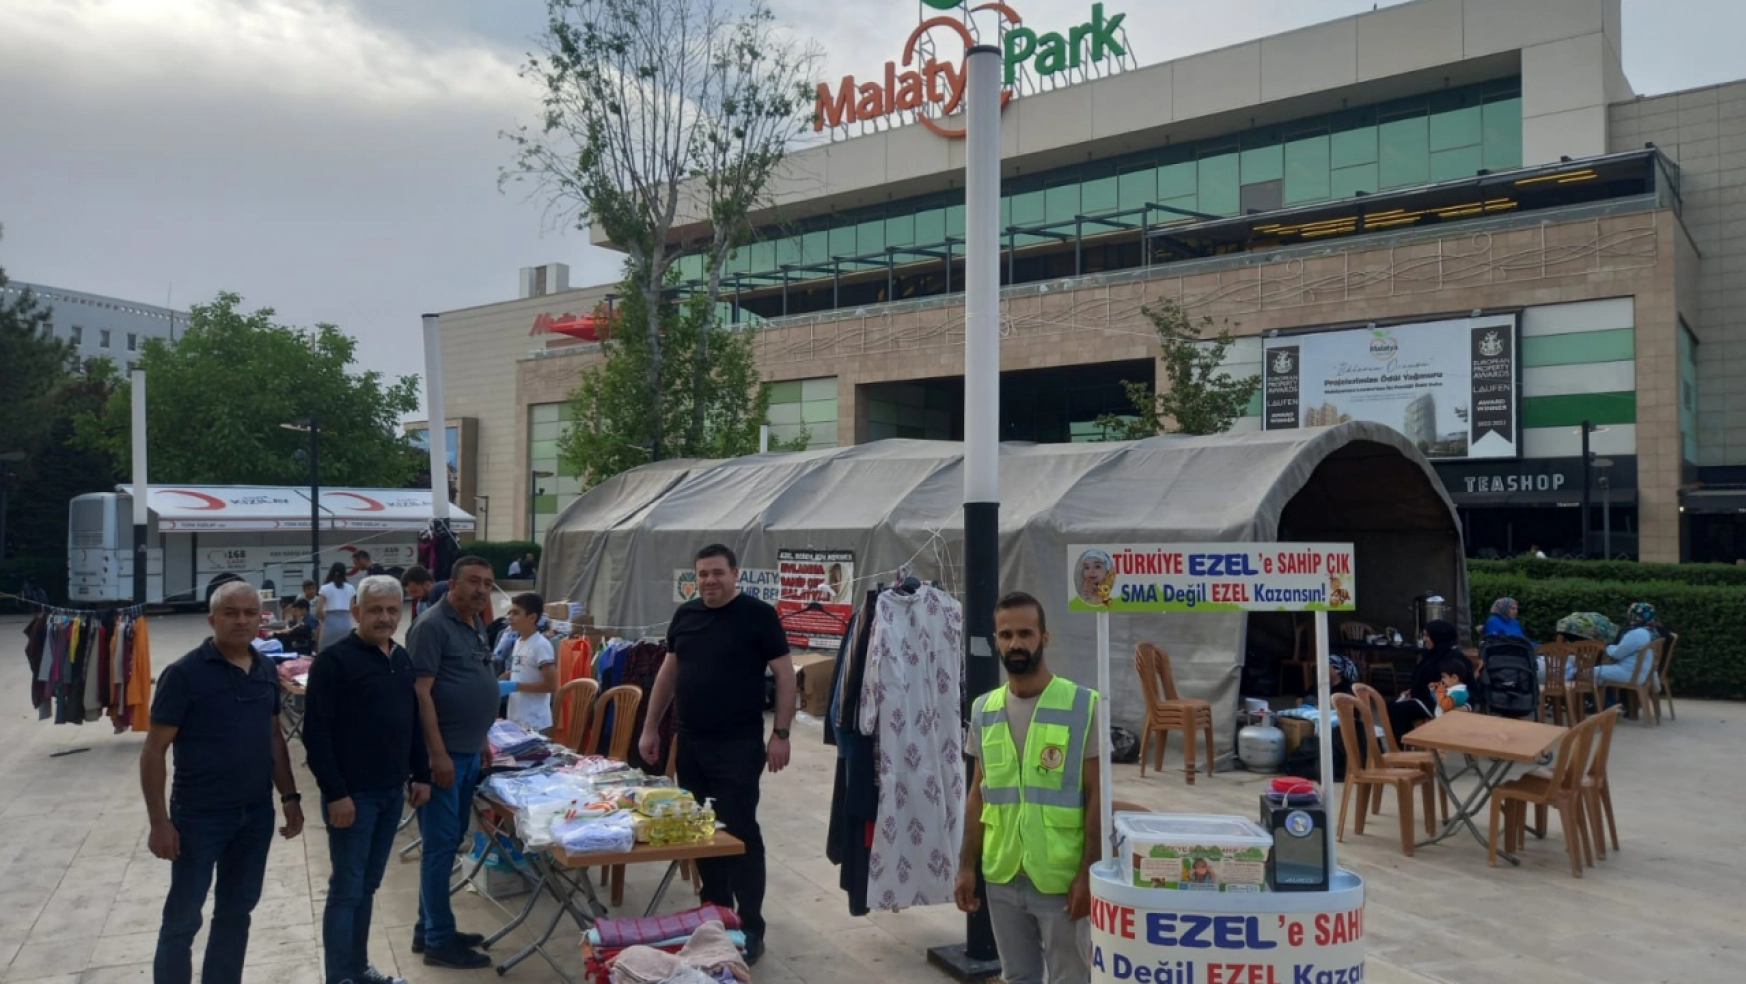 SMA Hastası Ezel Bebek'e Yardım için Malatya Park AVM Önünde Kermes